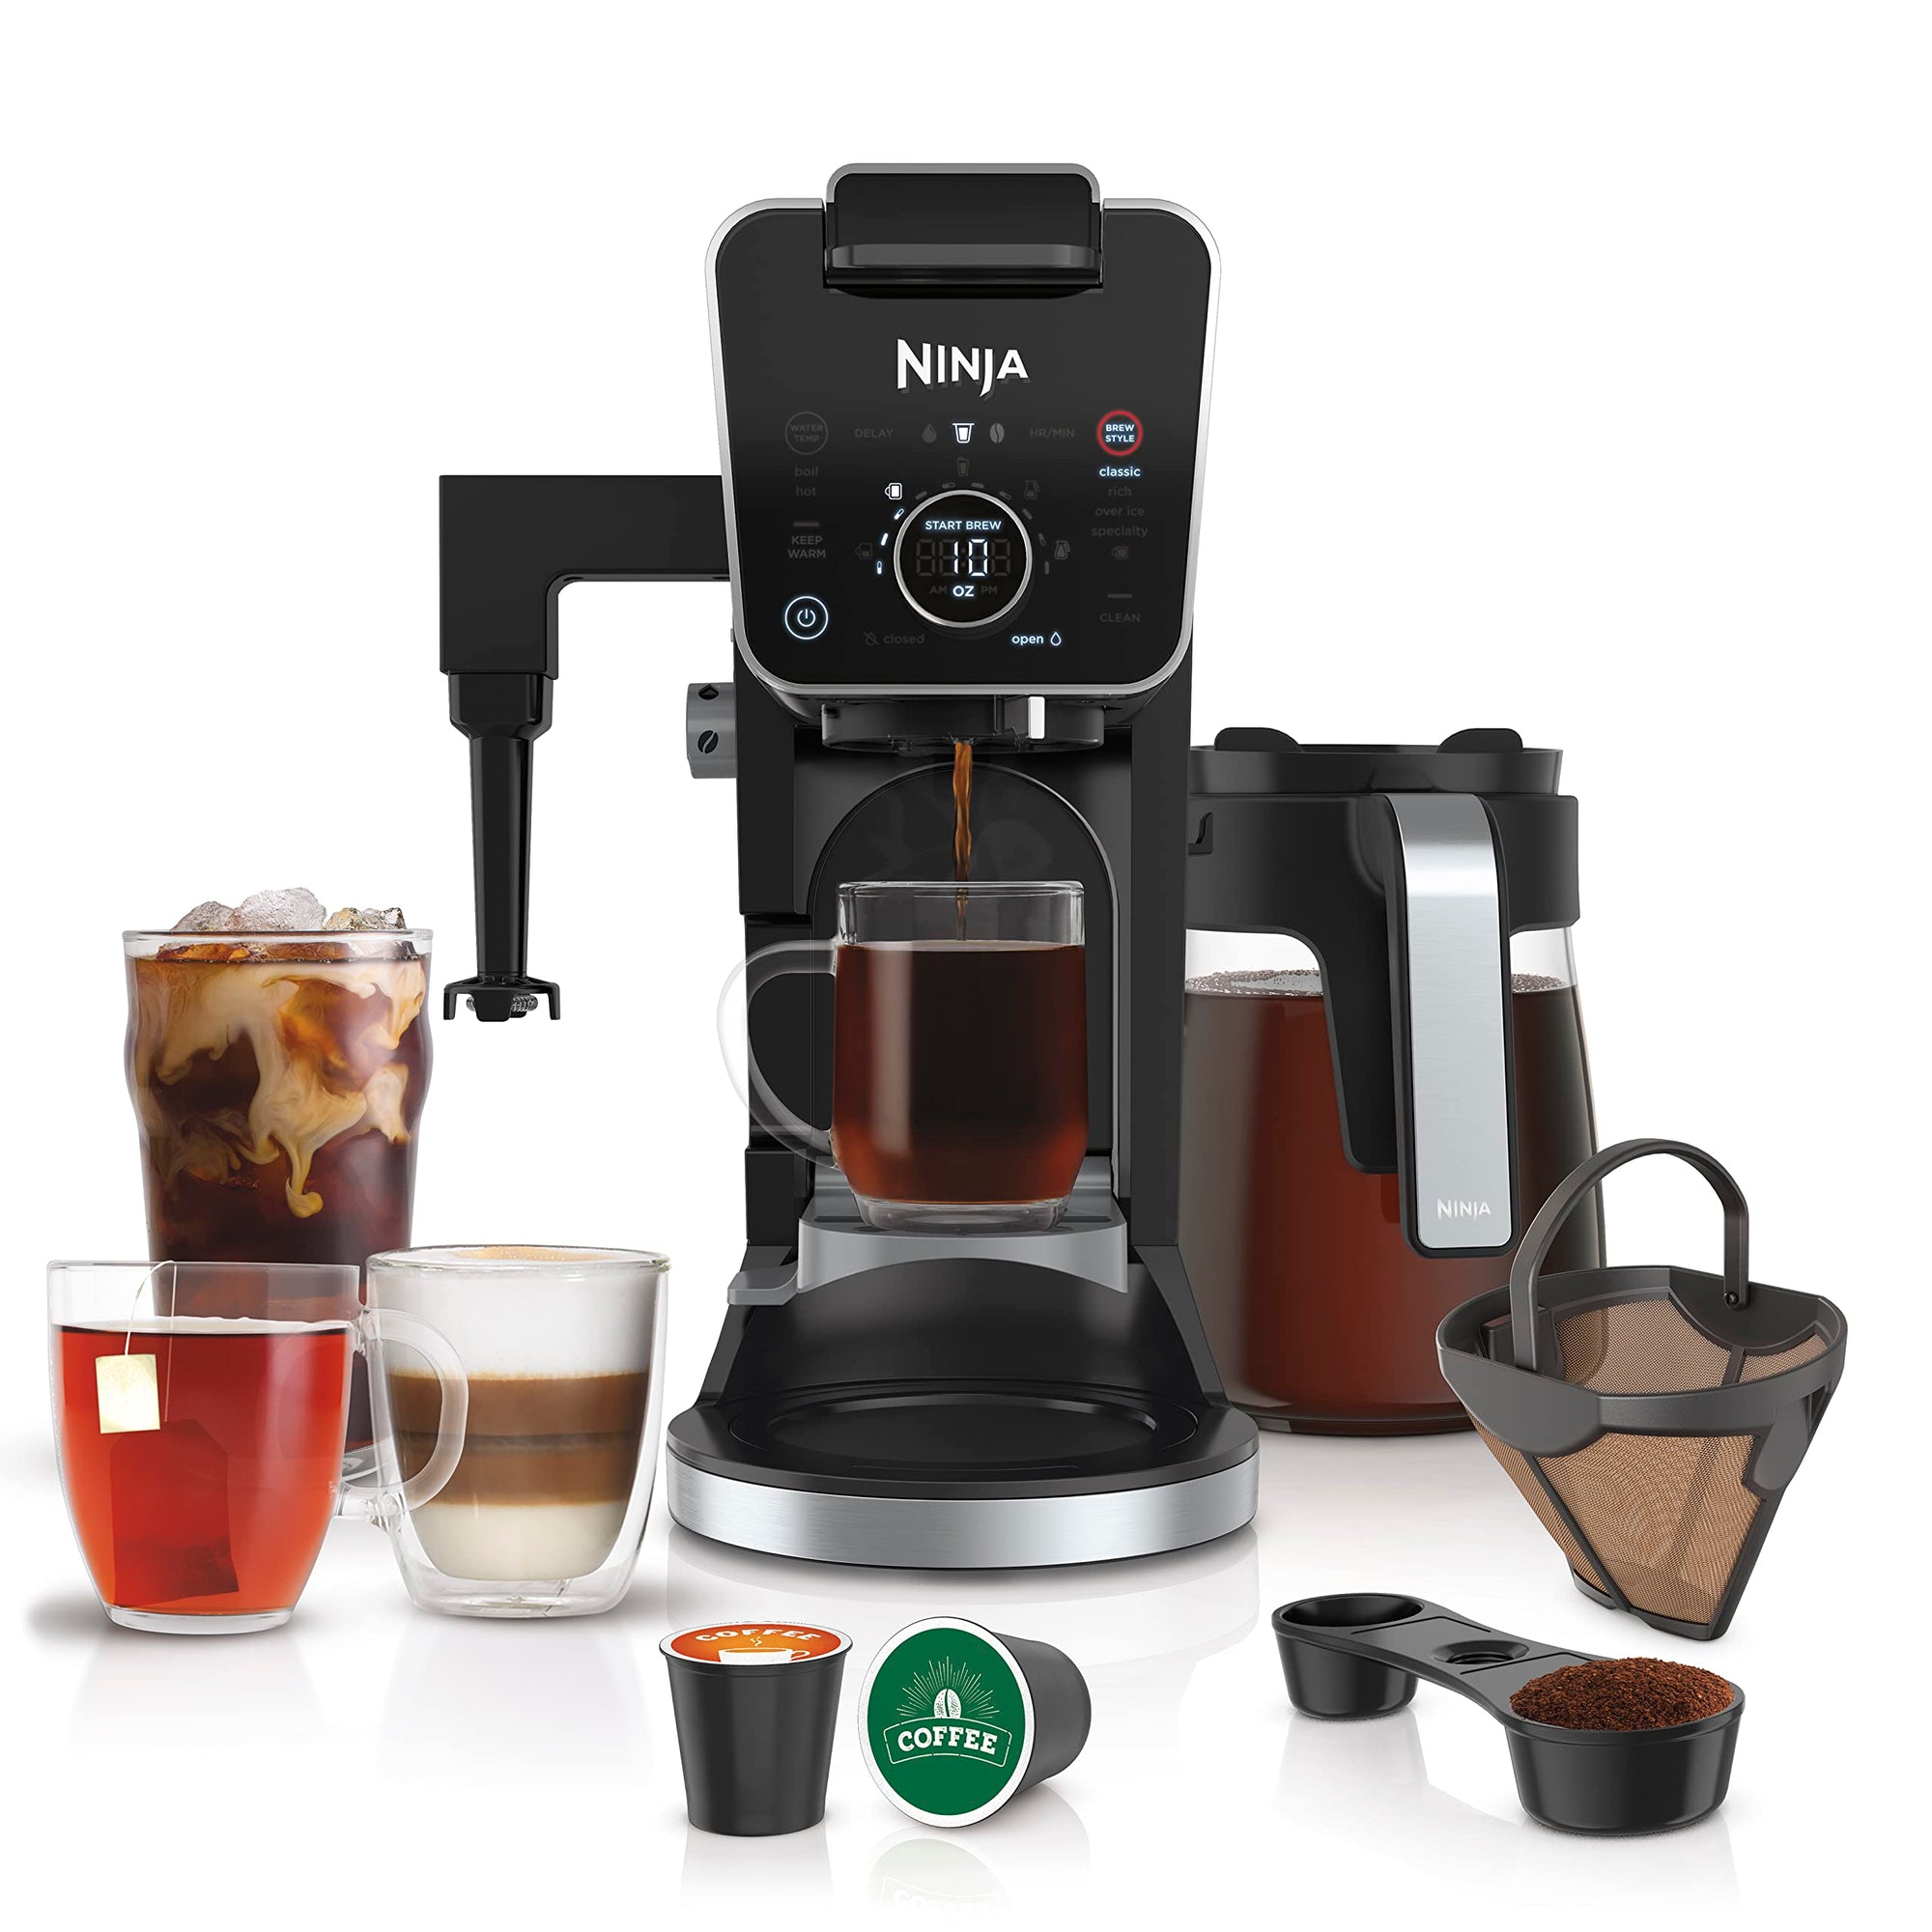 निंजा सीएफपी307 डुअलब्रू प्रो स्पेशलिटी कॉफी सिस्टम, सिंगल-सर्व, के-कप और 12-कप ड्रिप कॉफी मेकर के साथ संगत, स्थायी फ़िल्टर ब्लैक के साथ